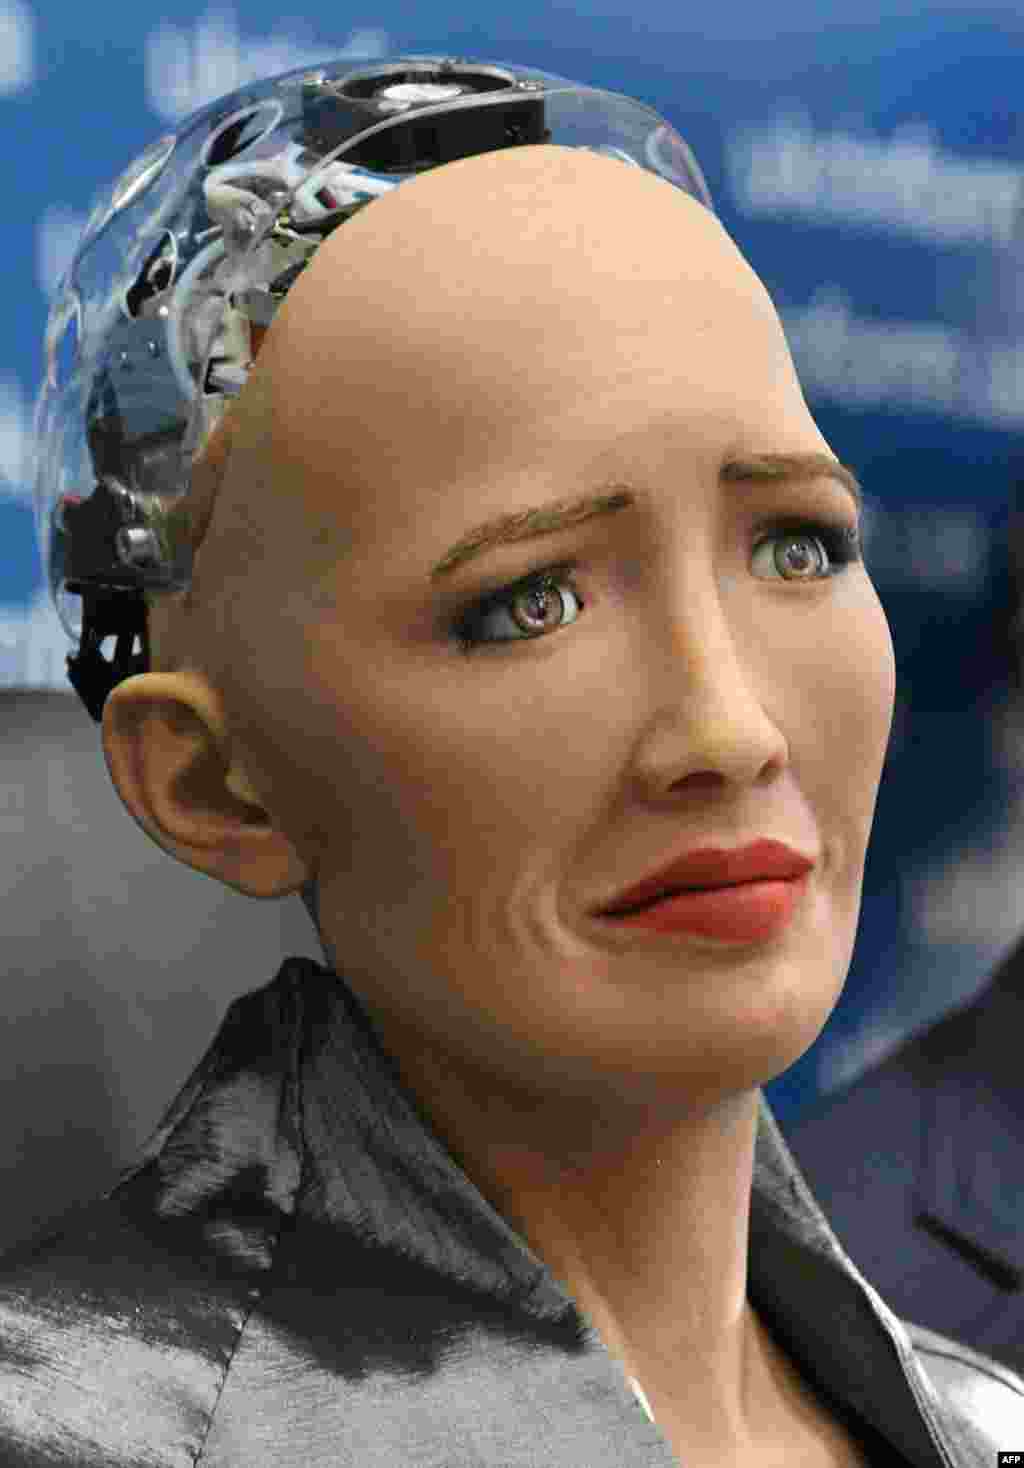 عکس العمل سوفیا، یک ربات انسان نما به یک خبر بد در یک کنفرانس خبری در کی&zwnj;یف. این ربات انسان نما توسط شرکت هنگ کنگی &laquo;هانسون رباتیک&raquo; طراحی و توسعه یافته&zwnj; است.